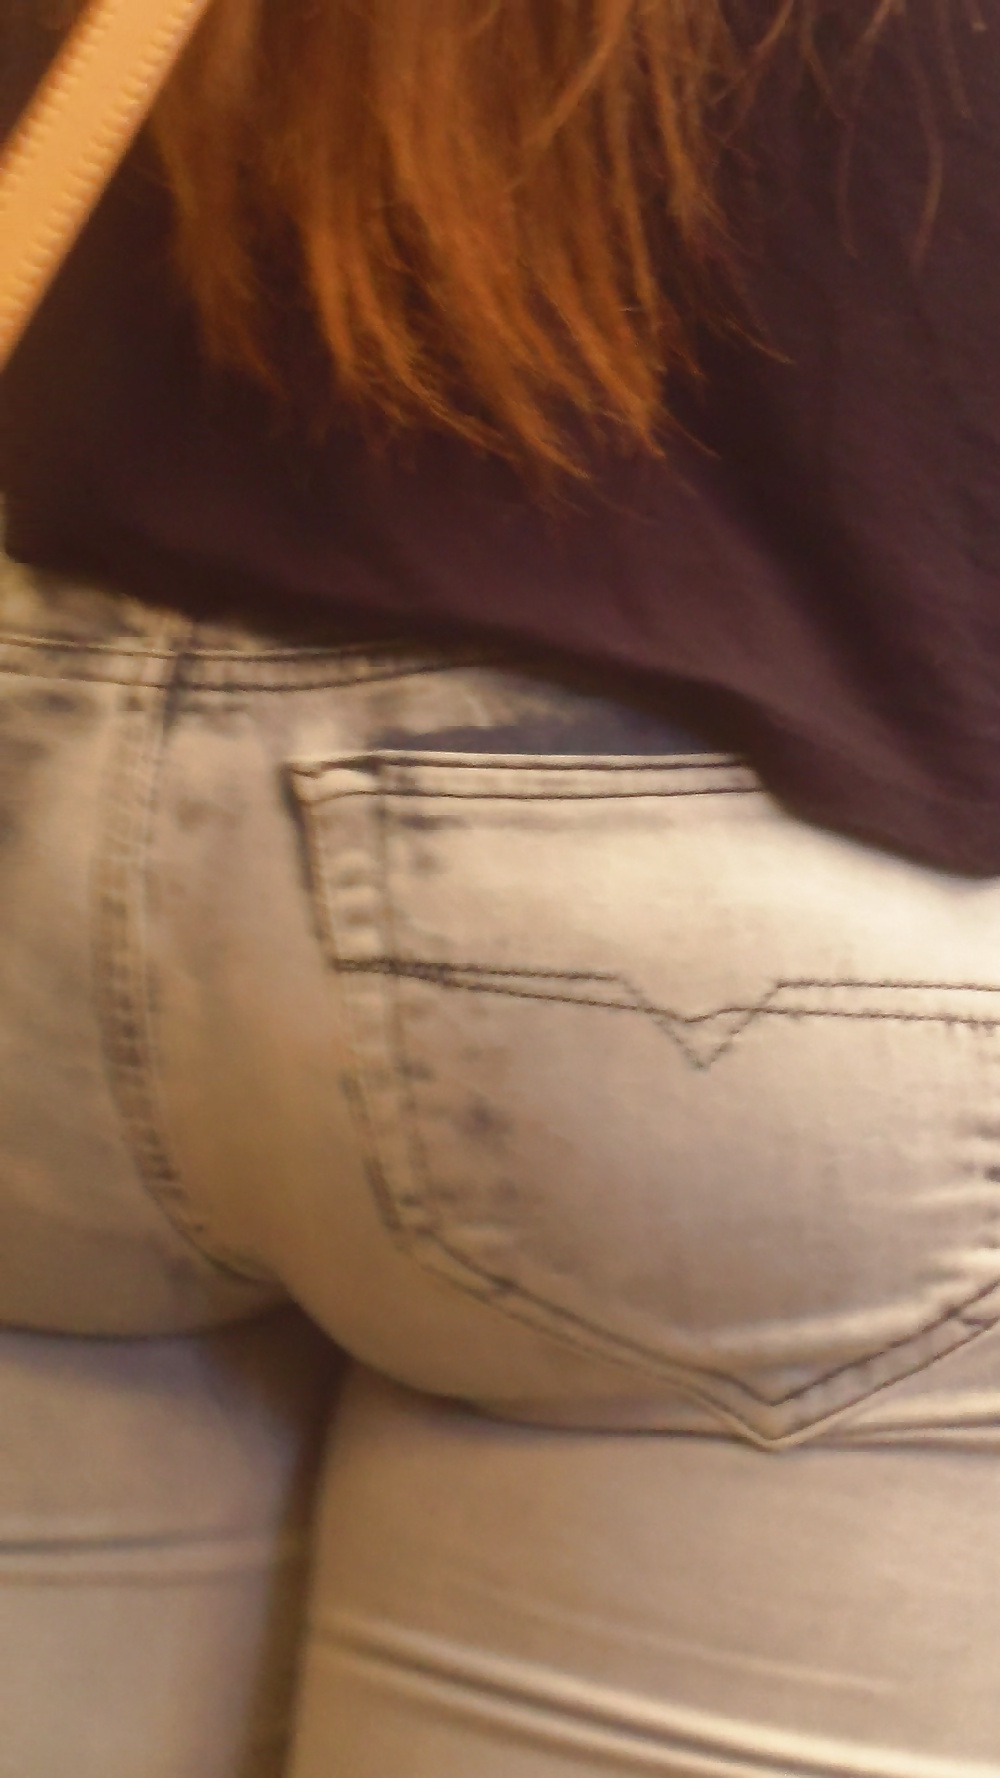 Popular teen girls ass & butt in jeans Part 6 #32009815